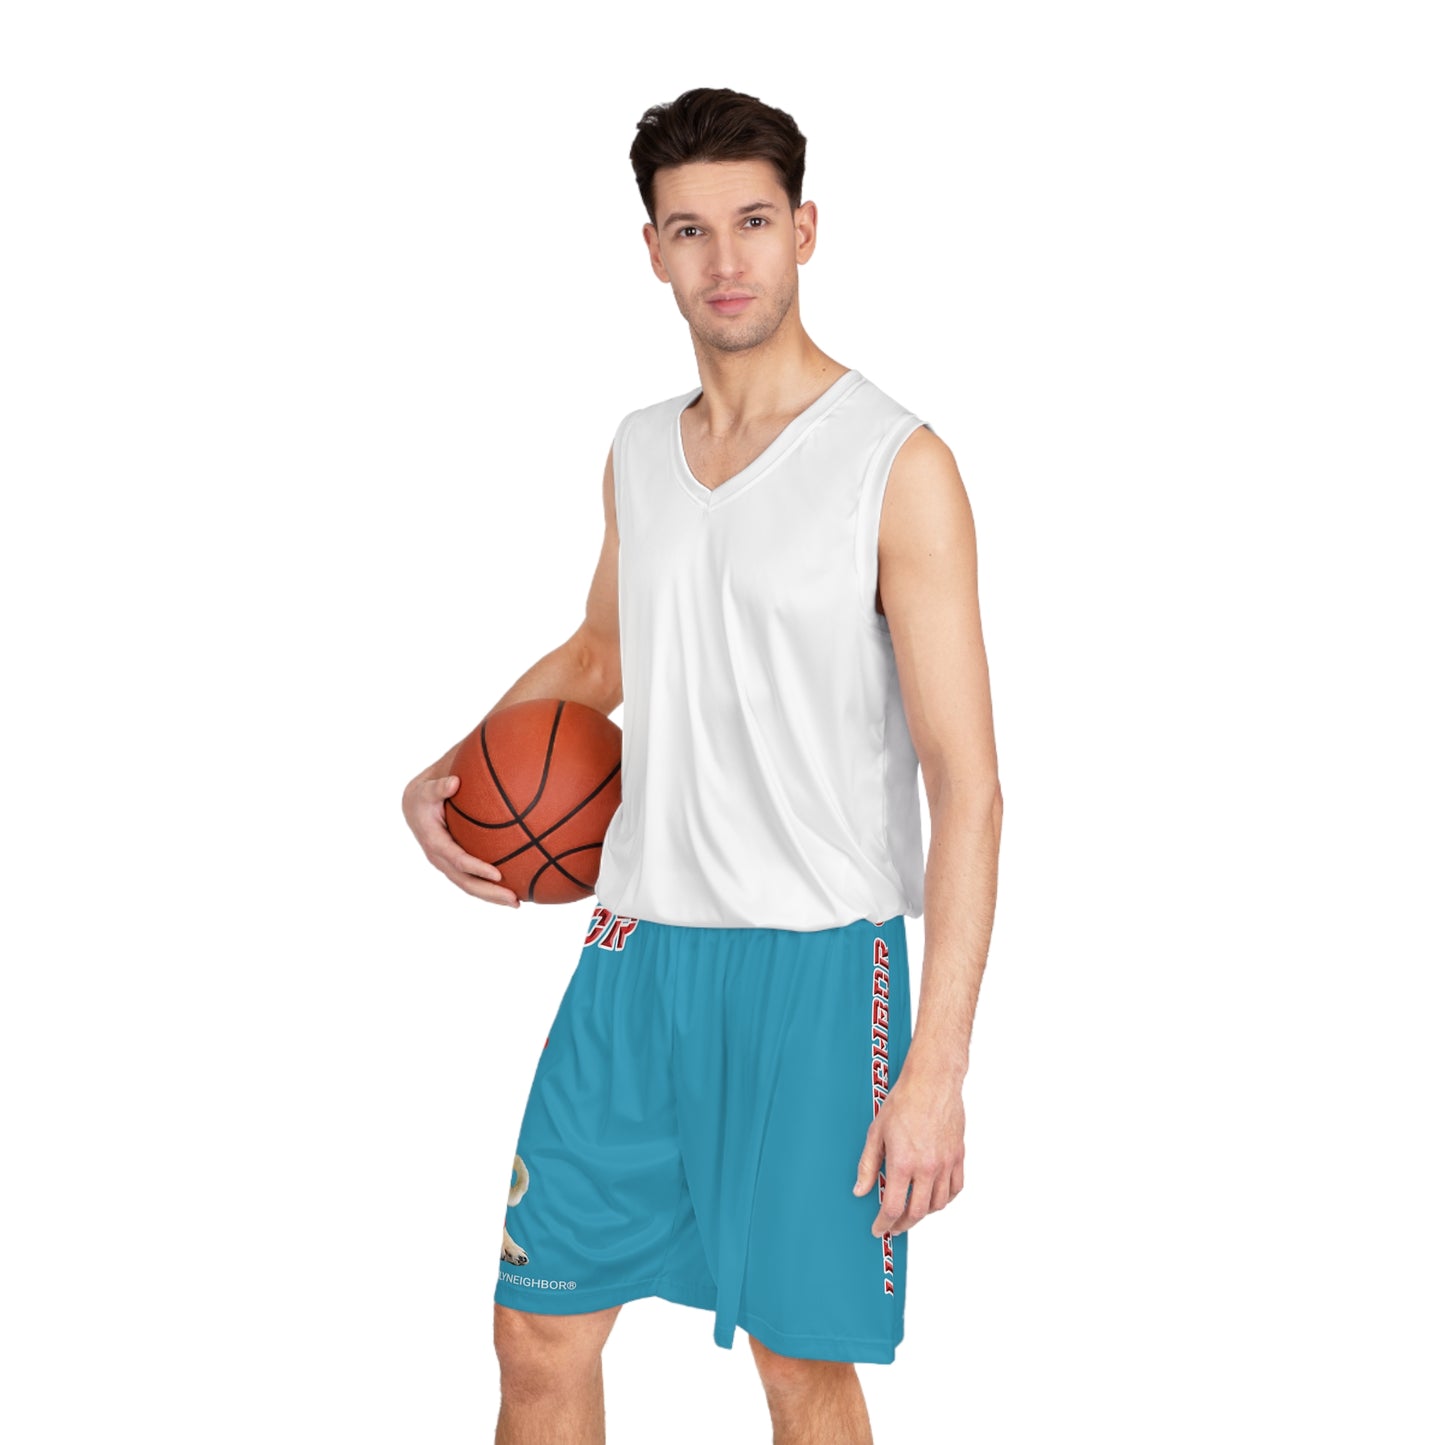 Ugly Neighbor II Basketball Shorts - Turquoise